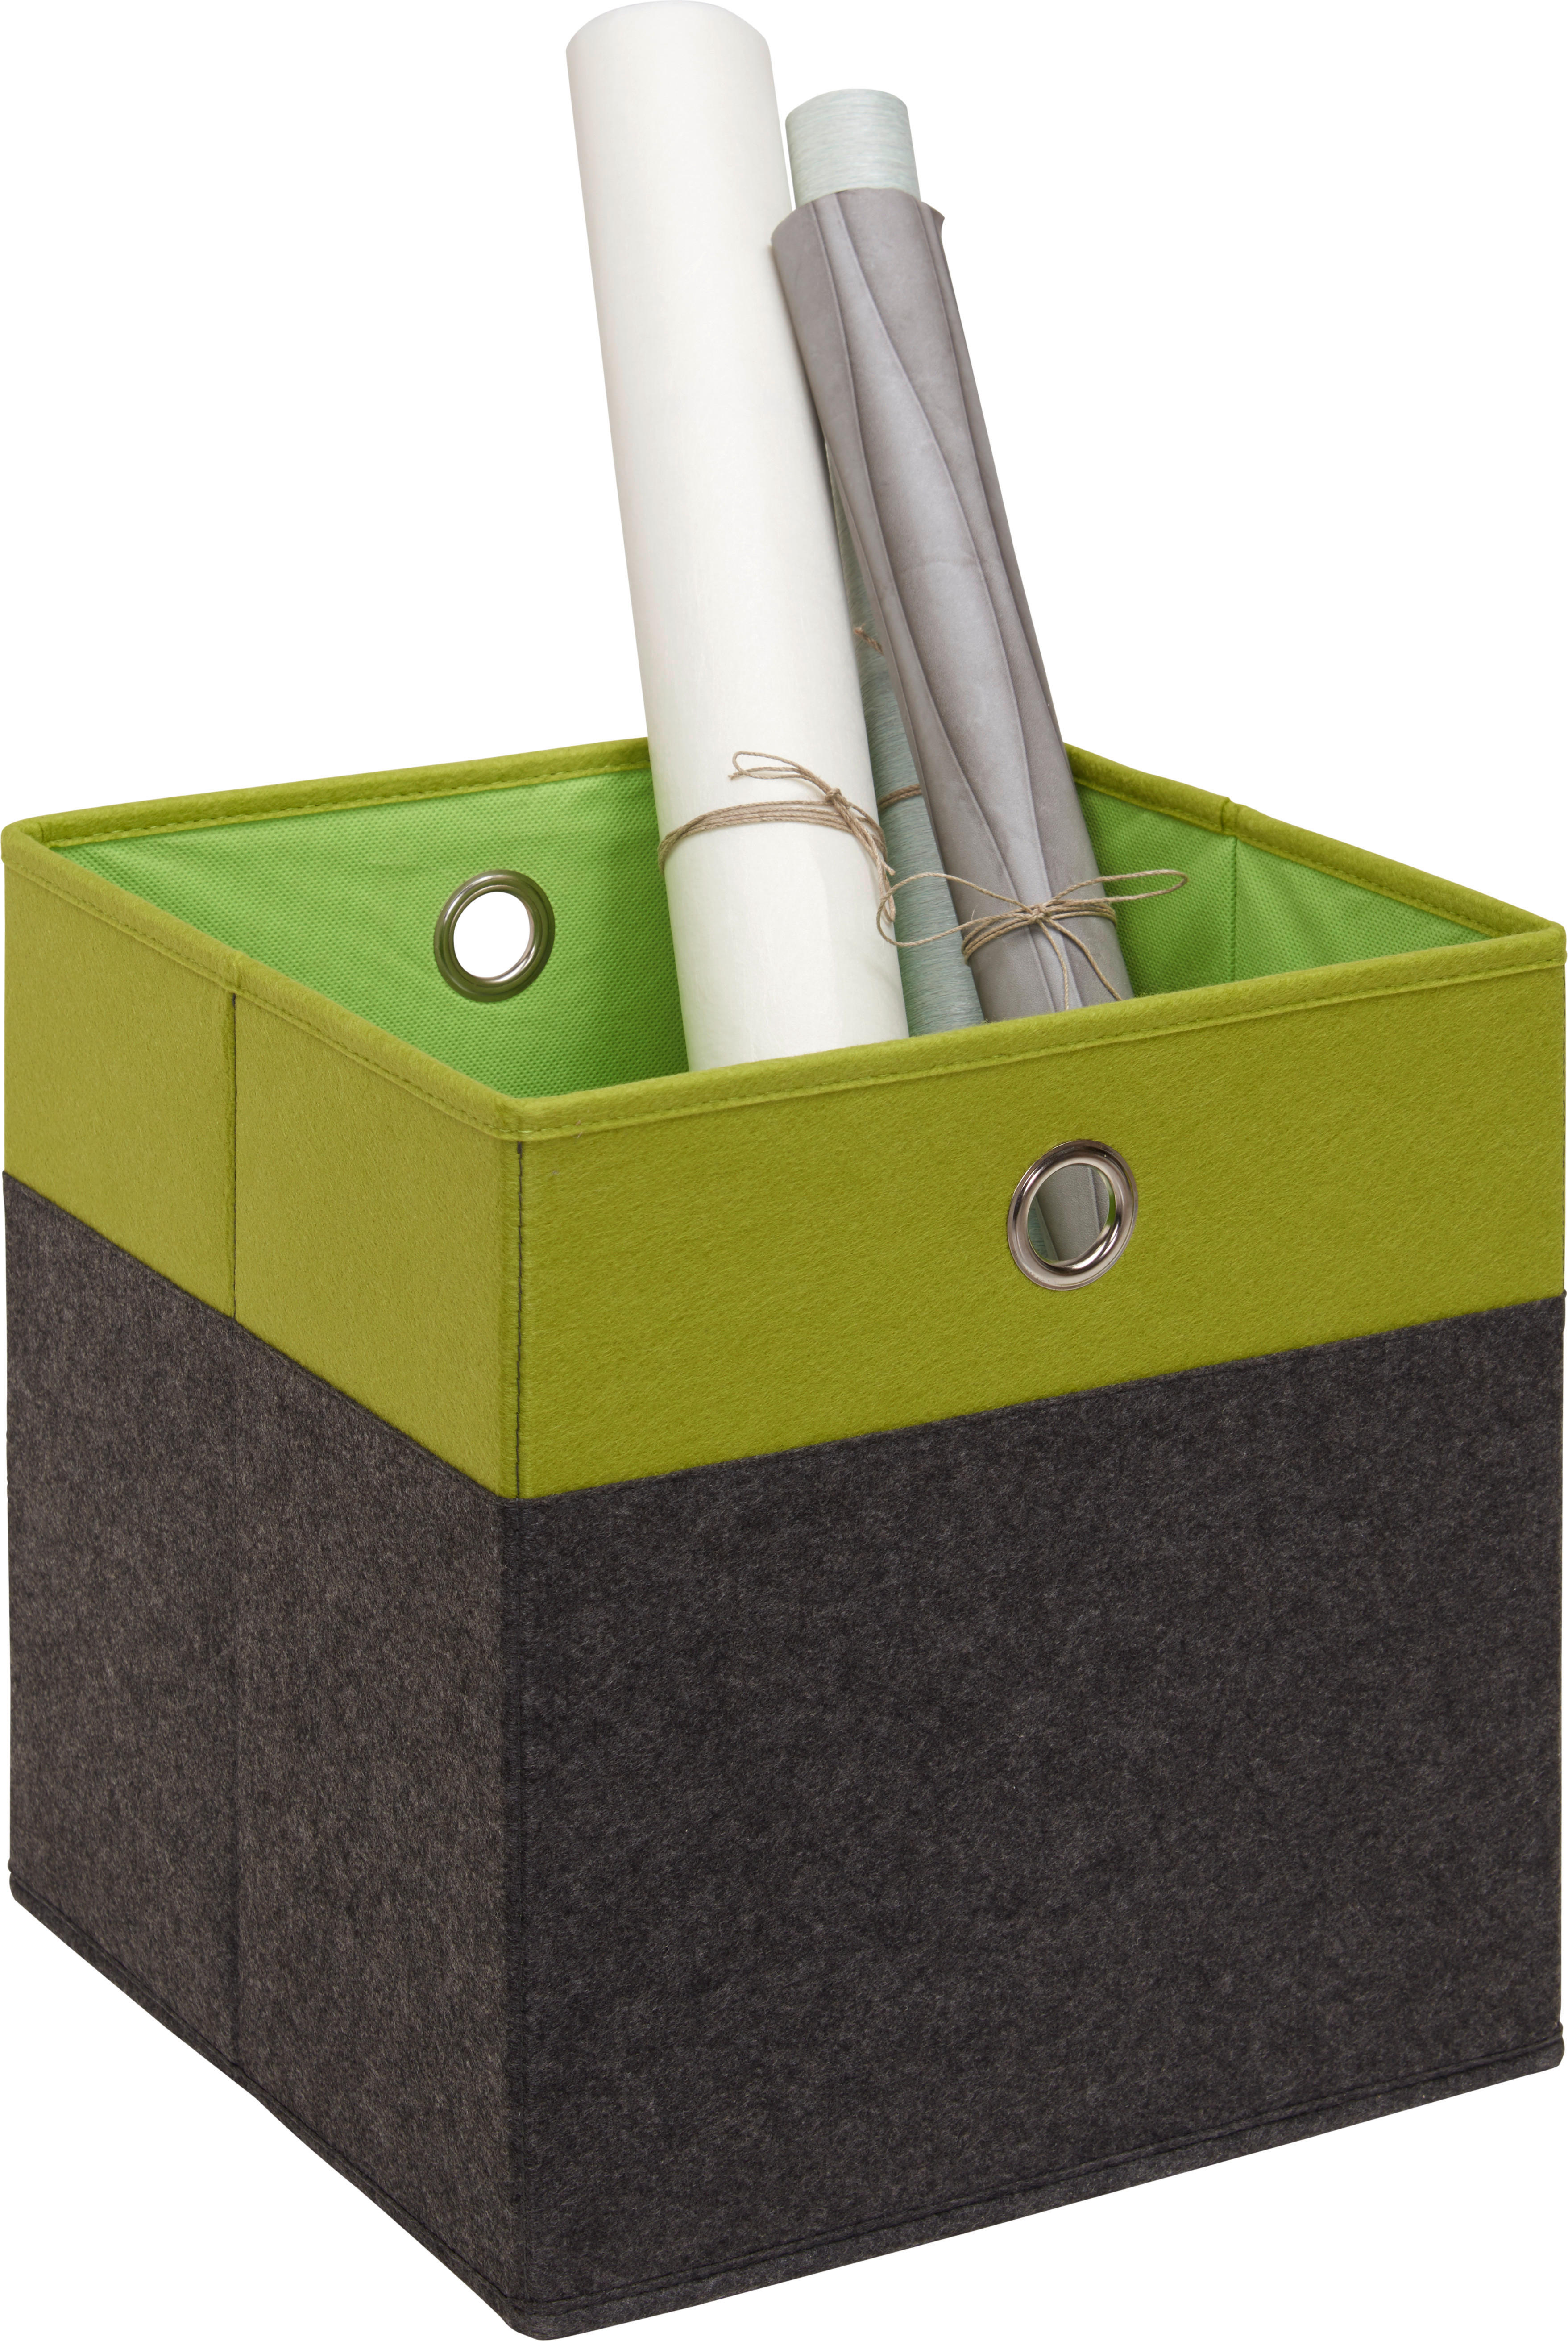 SKLADACÍ BOX, kov, textil, kartón, 32/32/32 cm - zelená/antracitová, Design, kartón/kov (32/32/32cm) - Carryhome